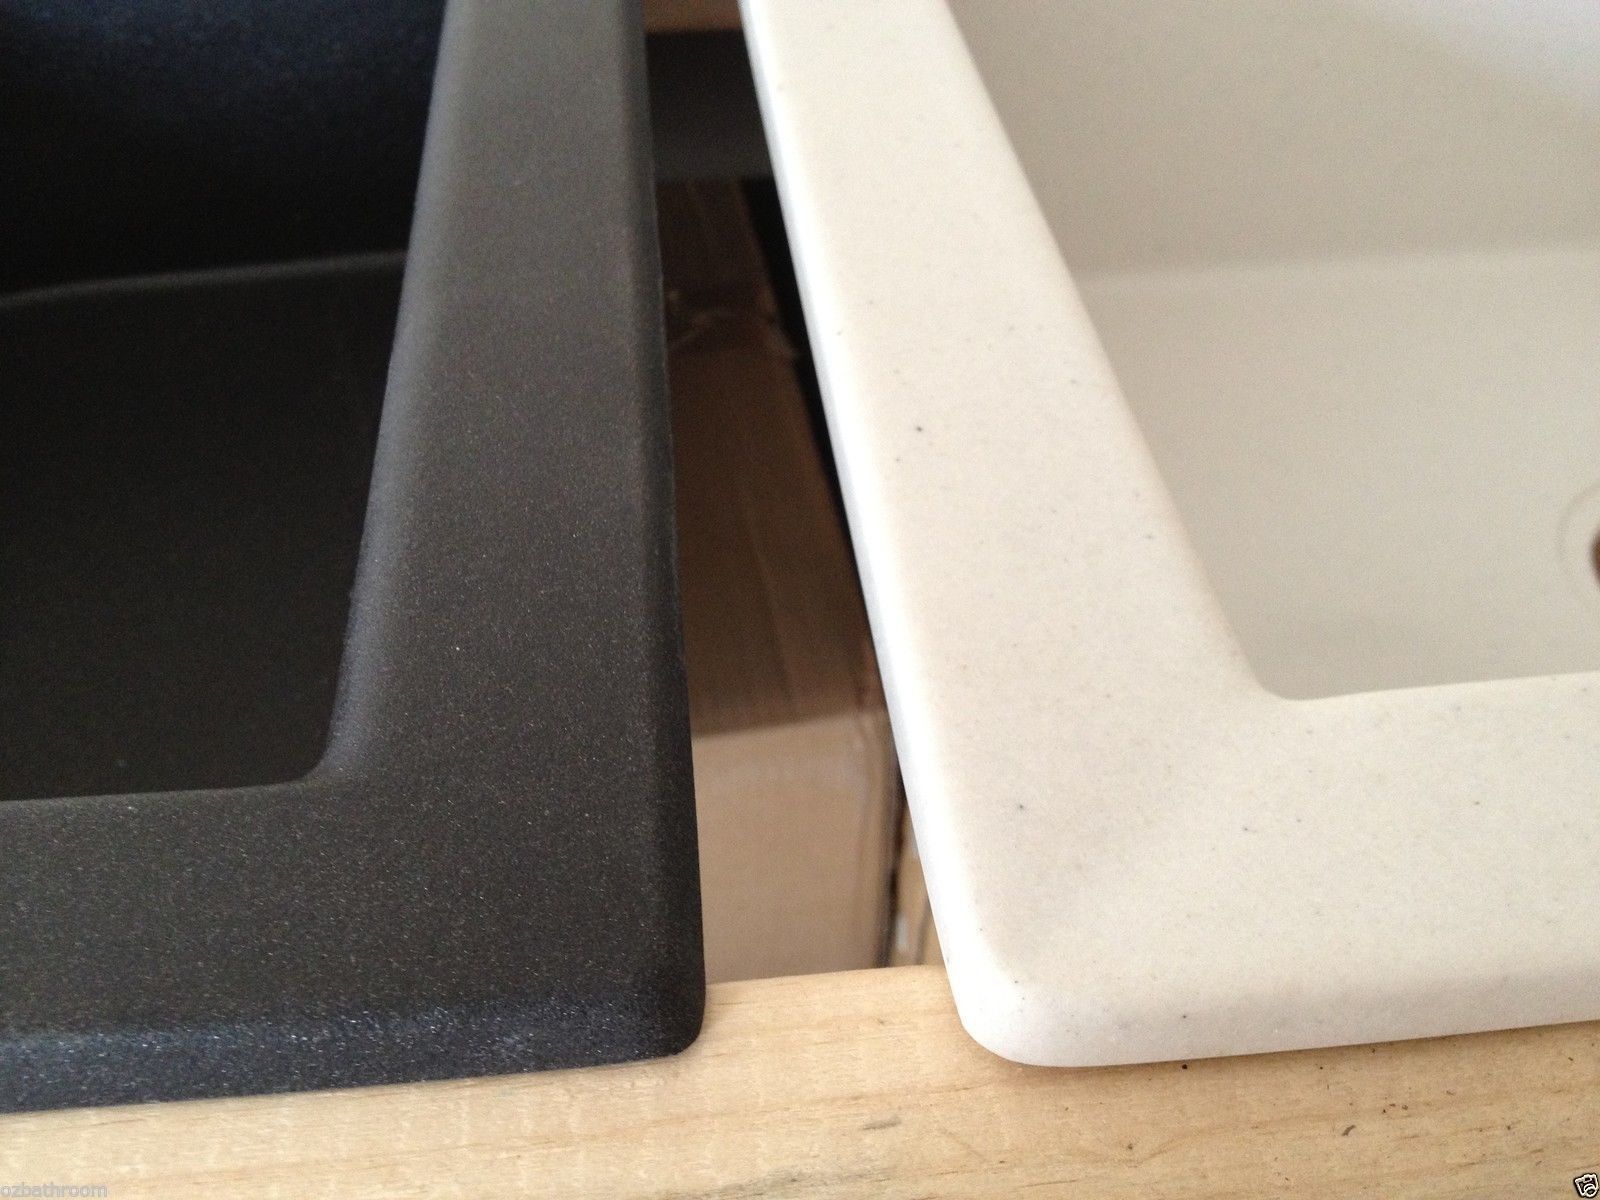 Black Cube quartz stone laundry trough kitchen sink tap faucet